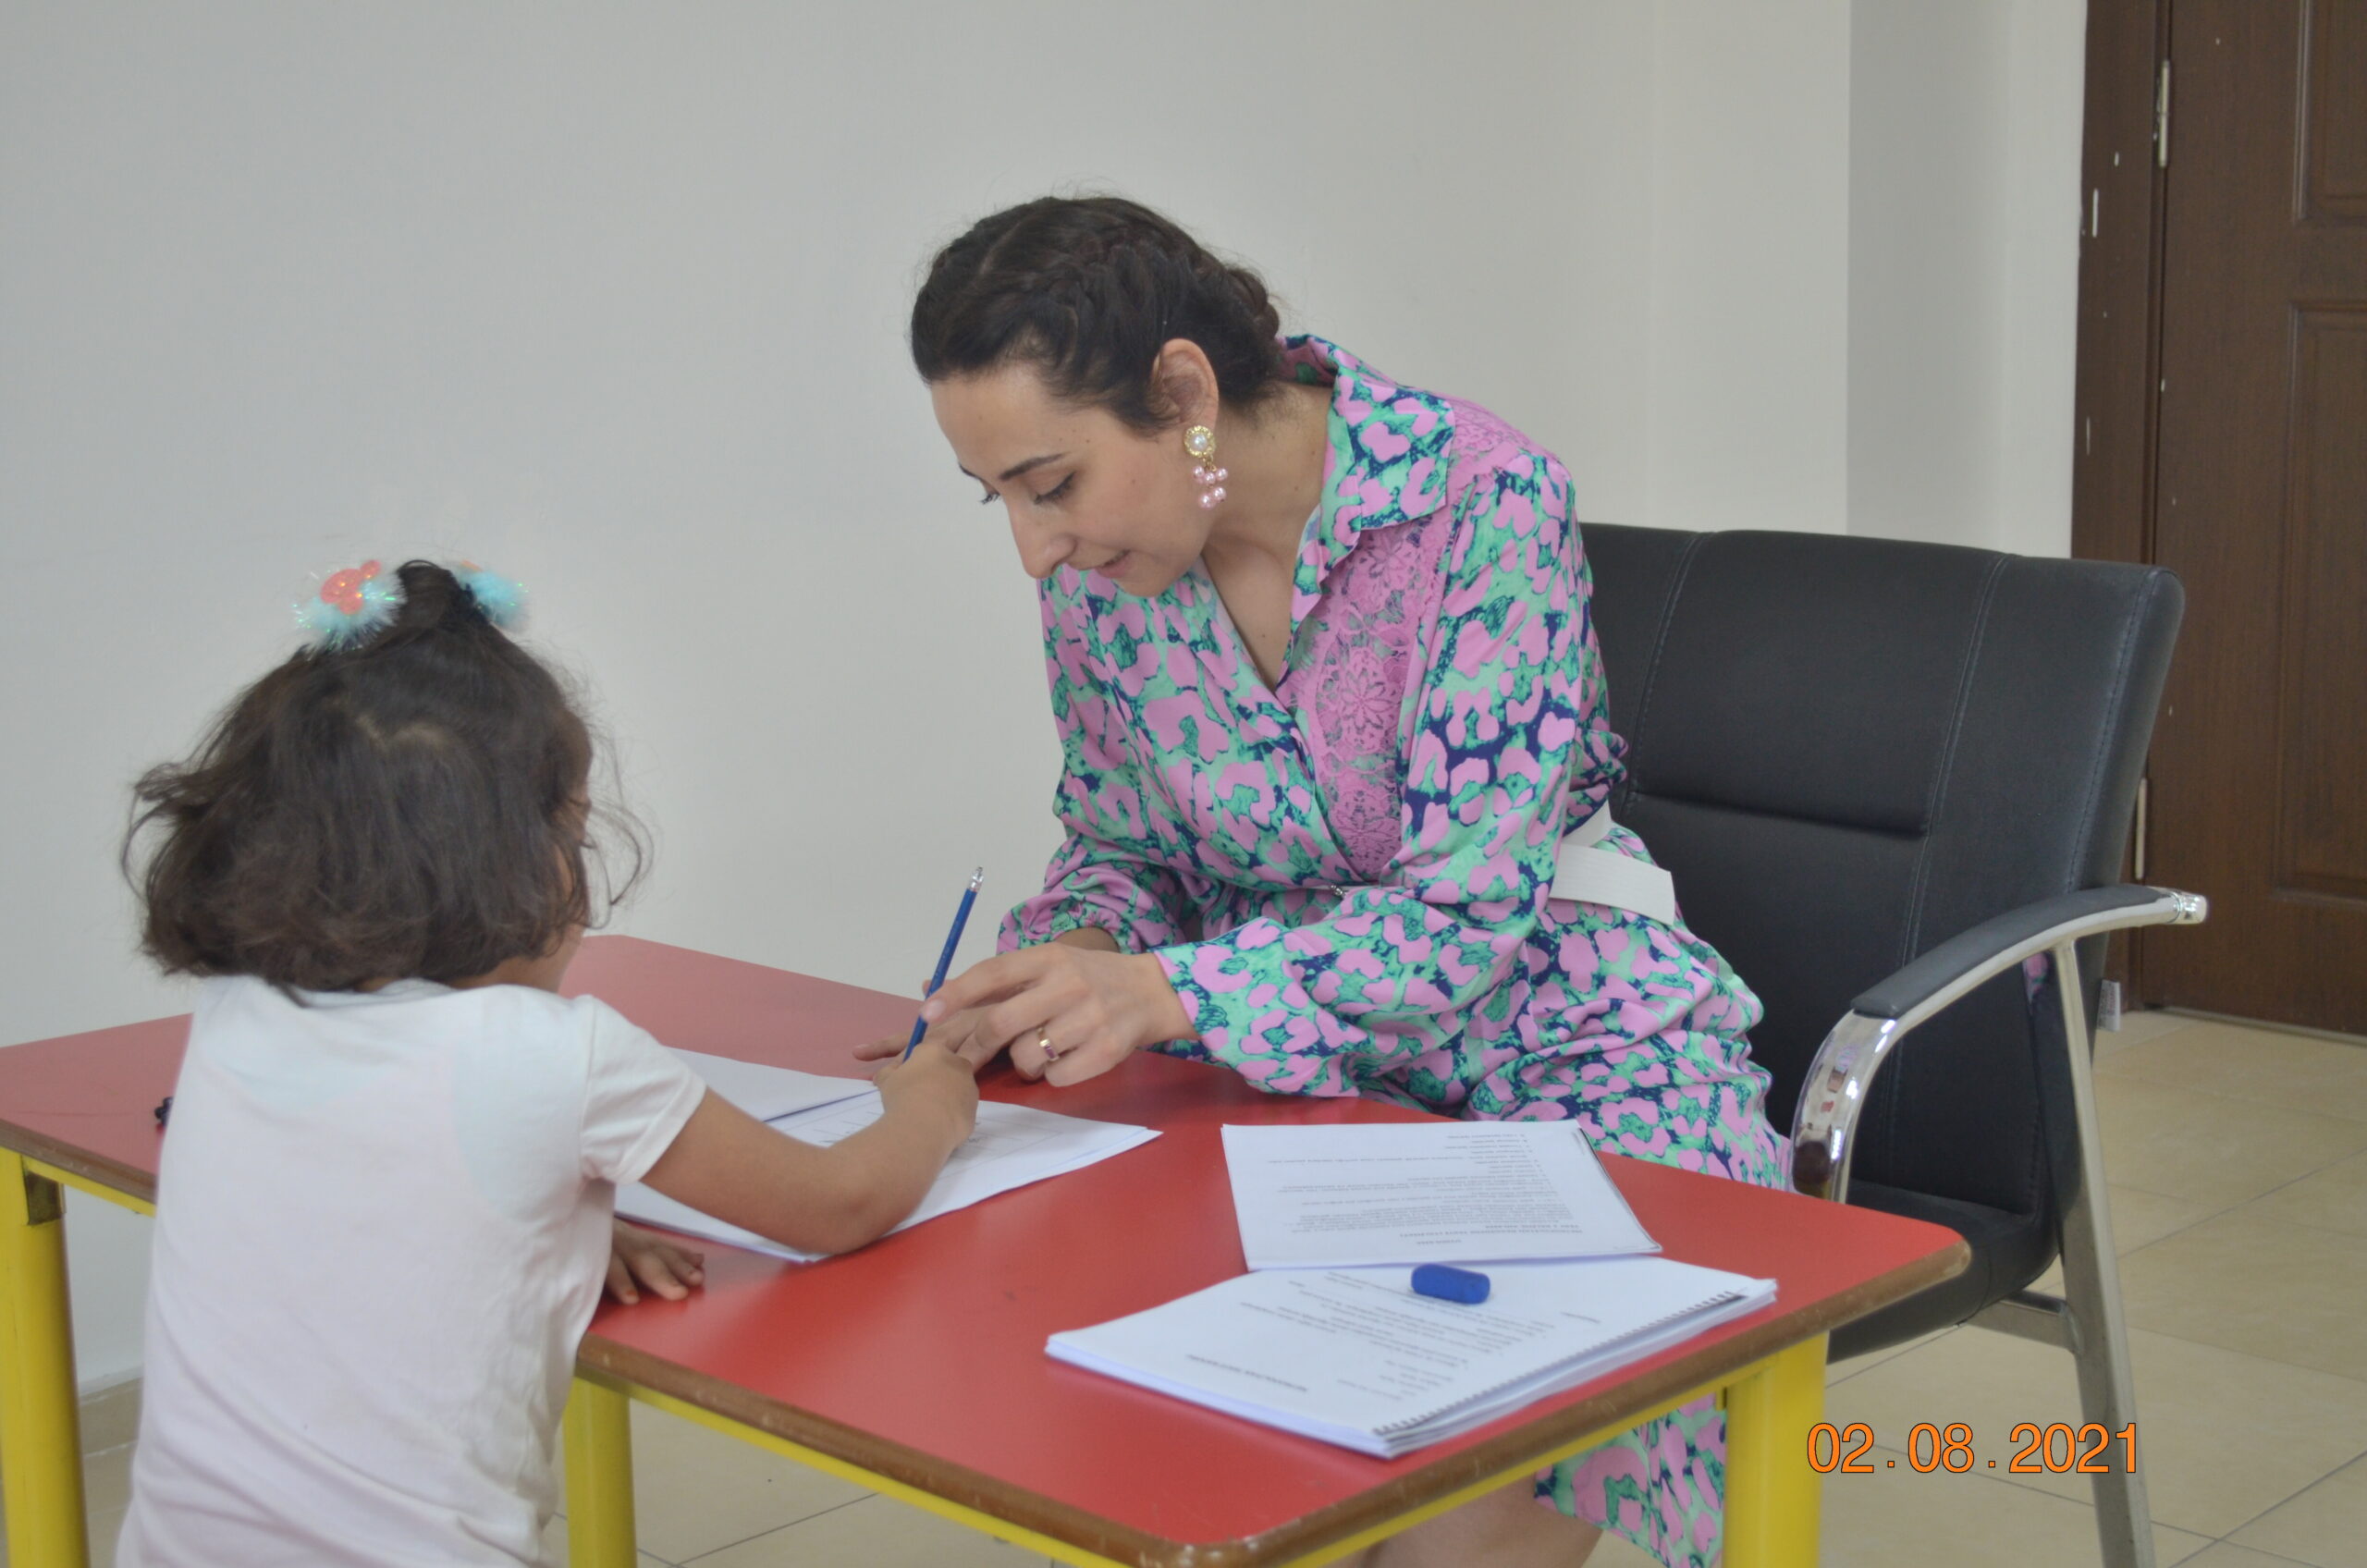  Şanlıurfa Büyükşehir’den, Okula Başlayacak Çocuklara ‘Okul Olgunluk’ Testi